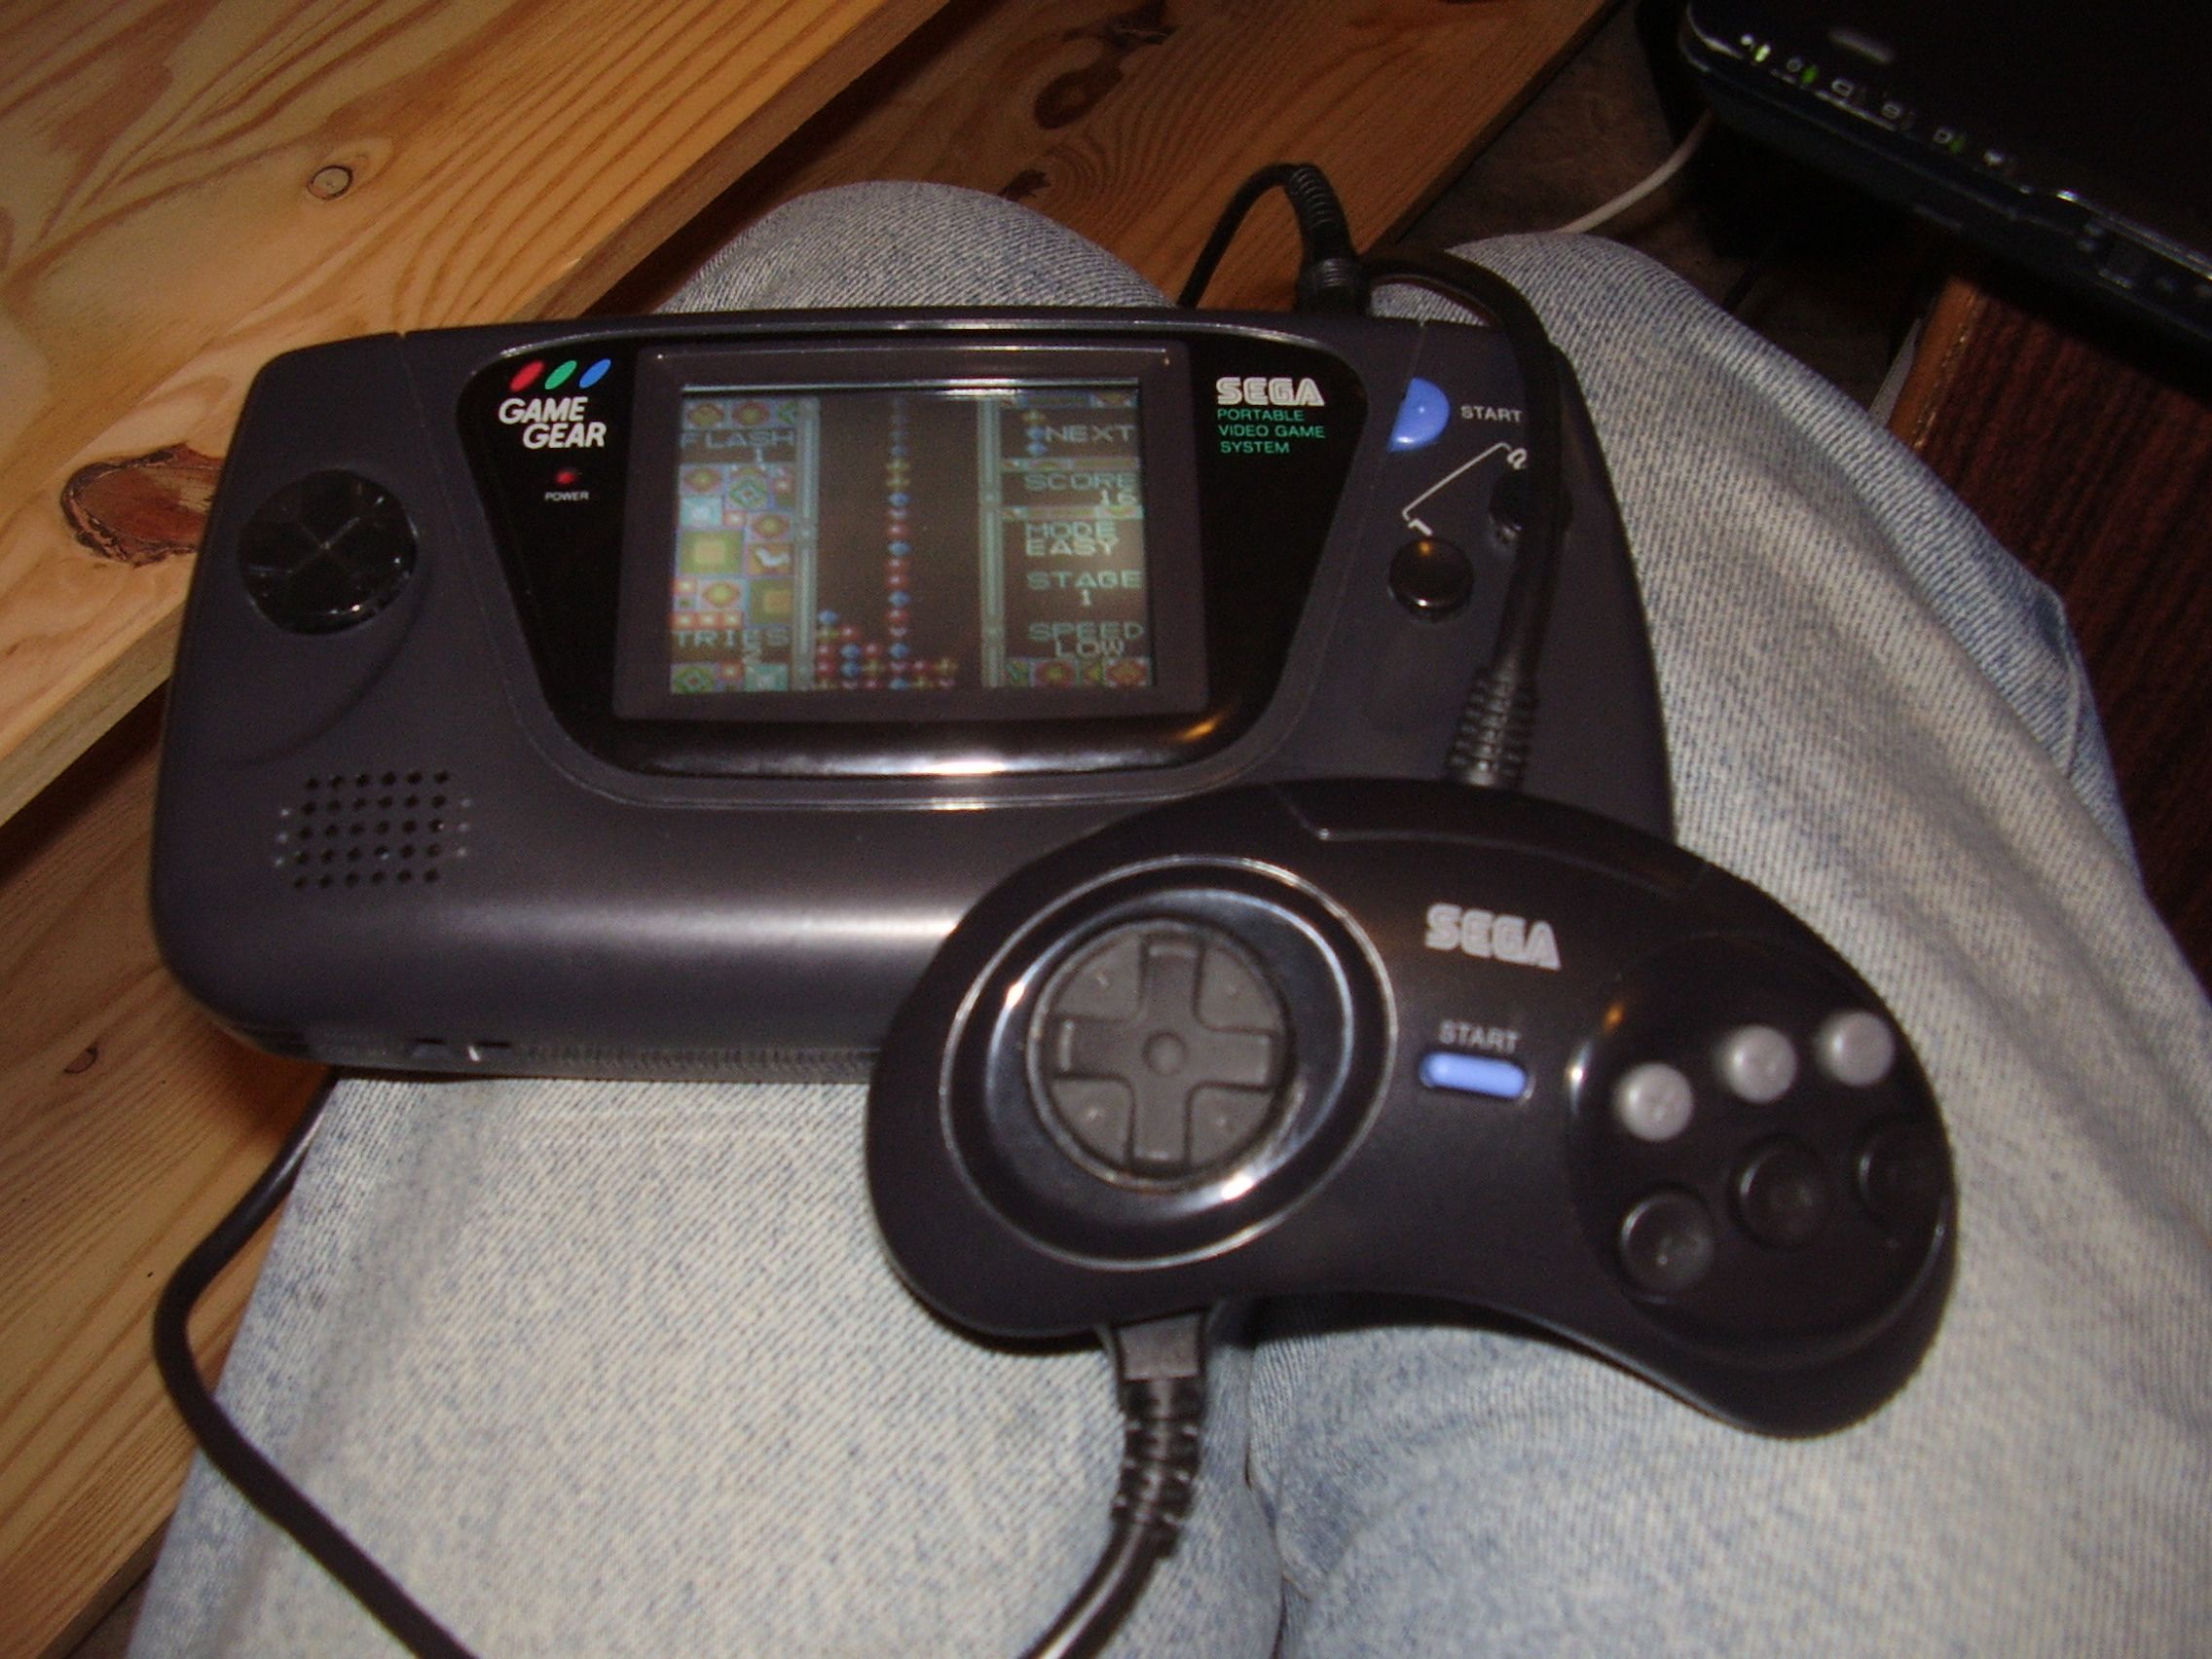 Ultimate game gear. Сега гейм Гир. Консоль гейм Гир сега. Sega GAMEGEAR конденсаторы. Sega игровая машина руль.